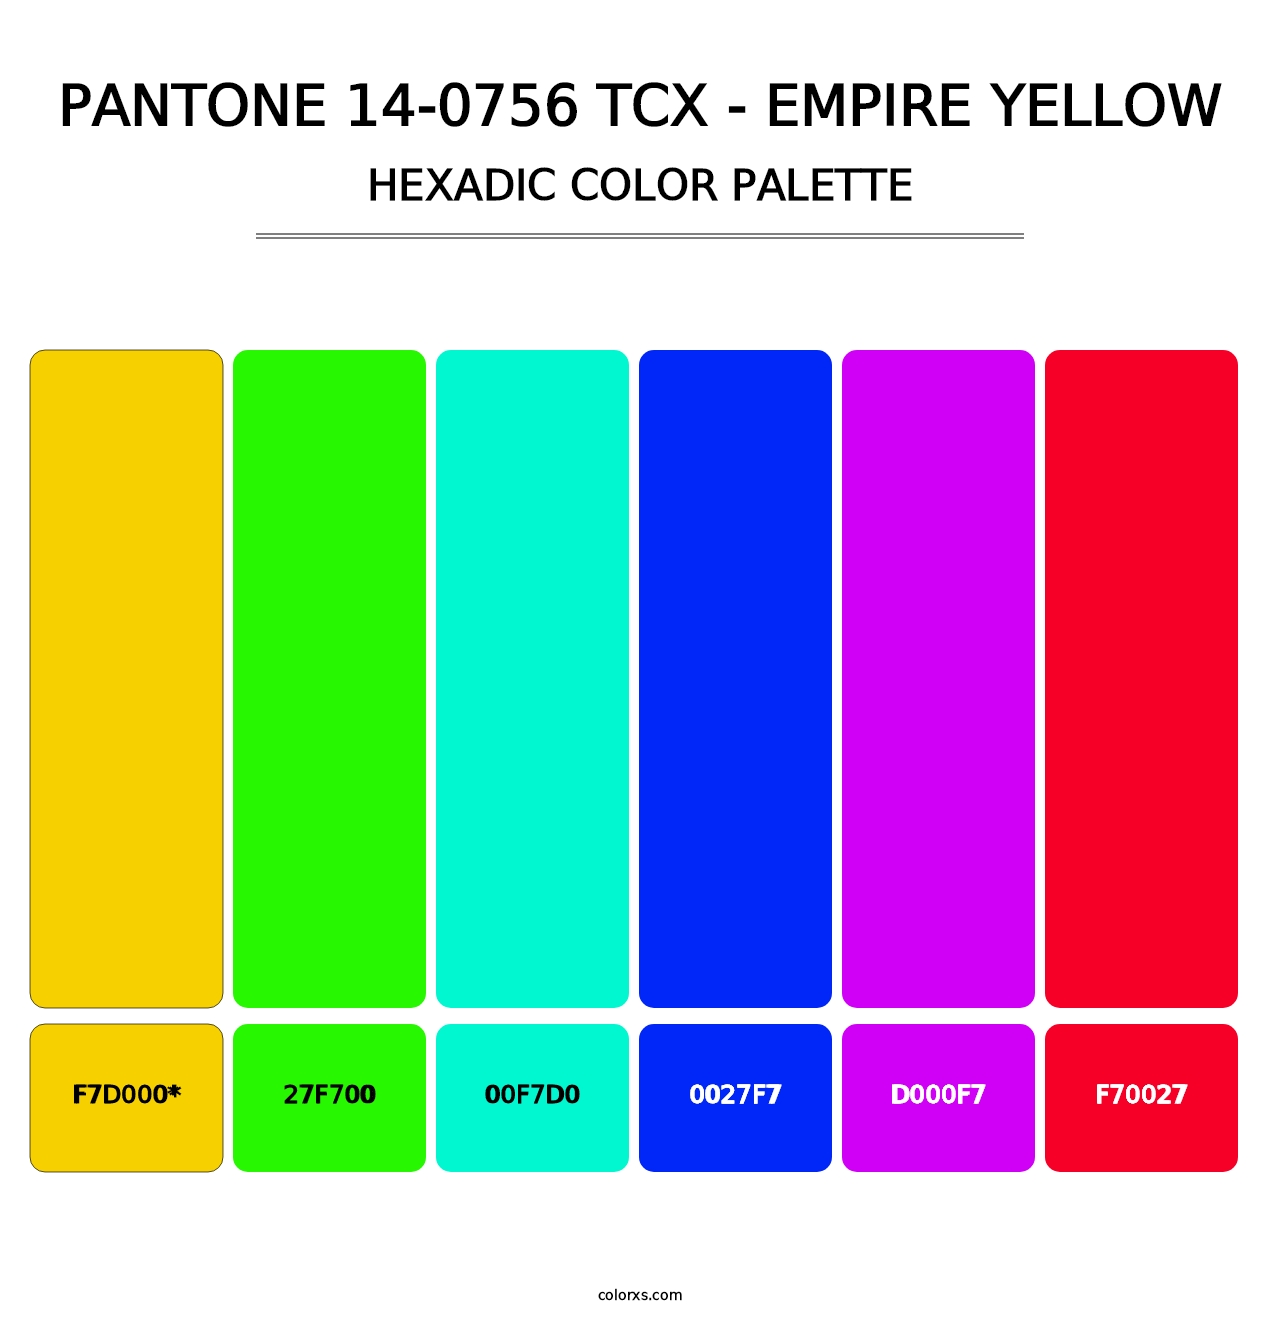 PANTONE 14-0756 TCX - Empire Yellow - Hexadic Color Palette